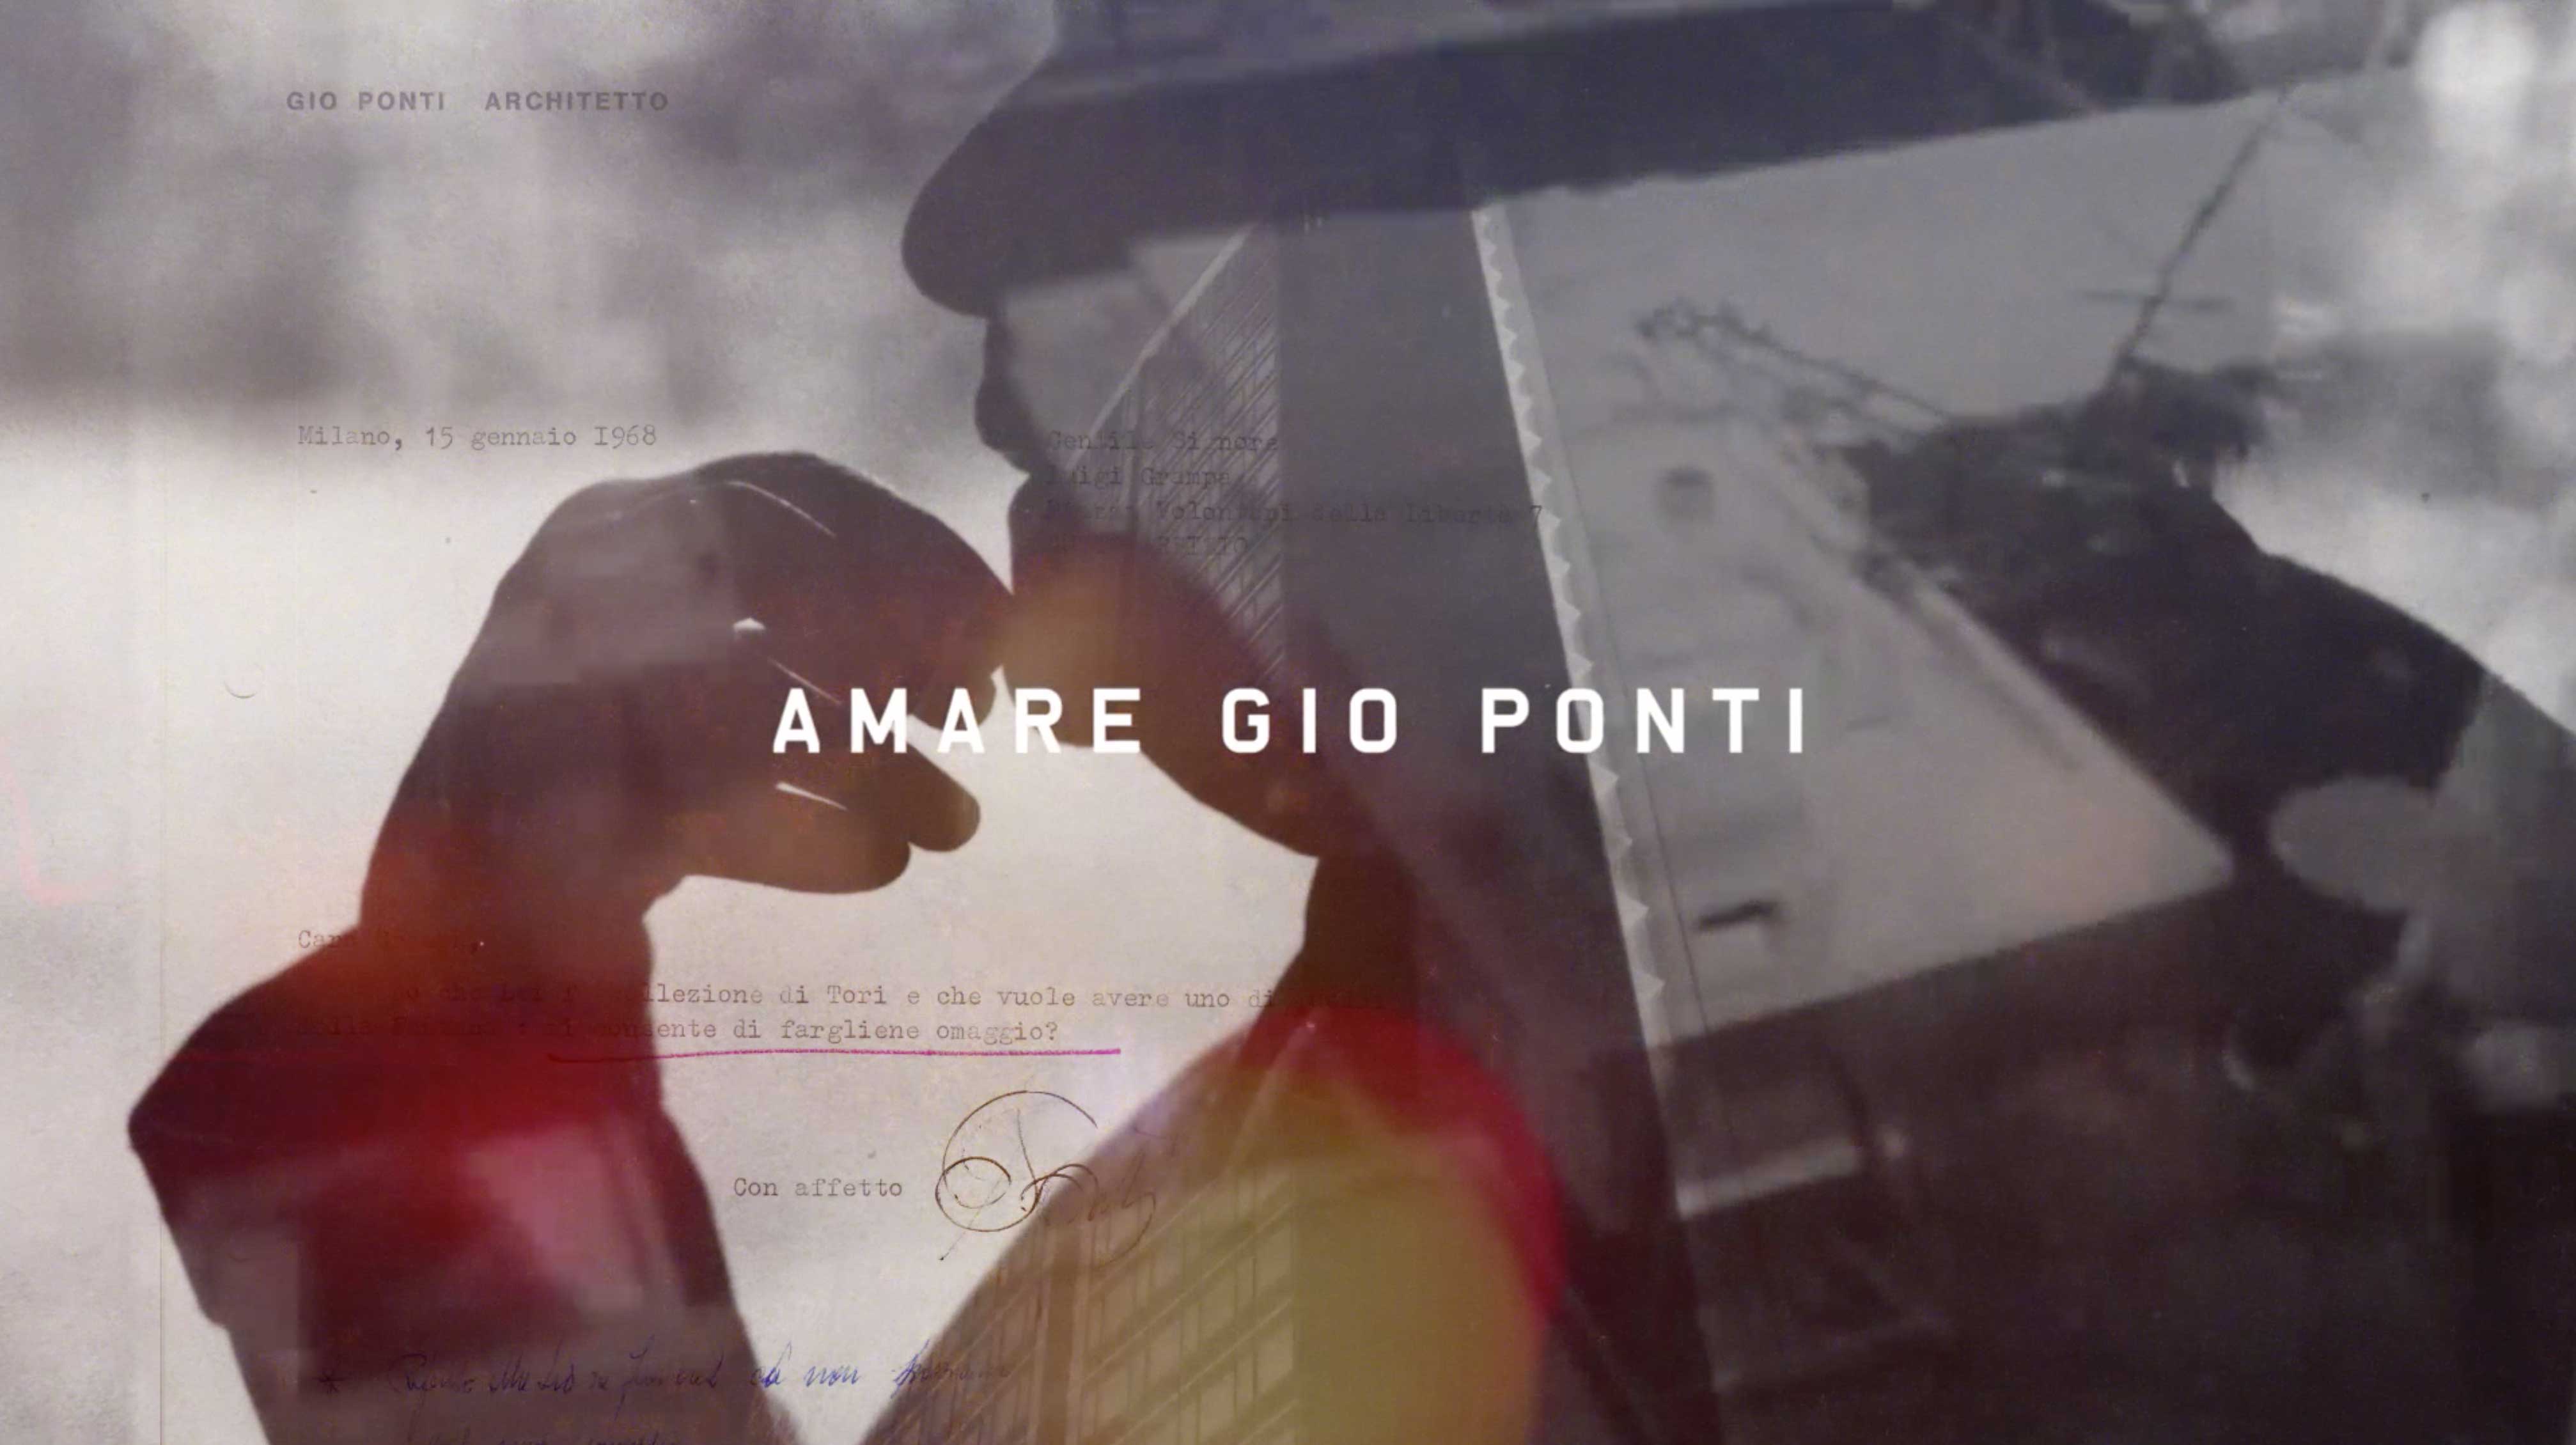 Architecture & Design Film Festival - Molteni&C presents “Amare Gio Ponti”